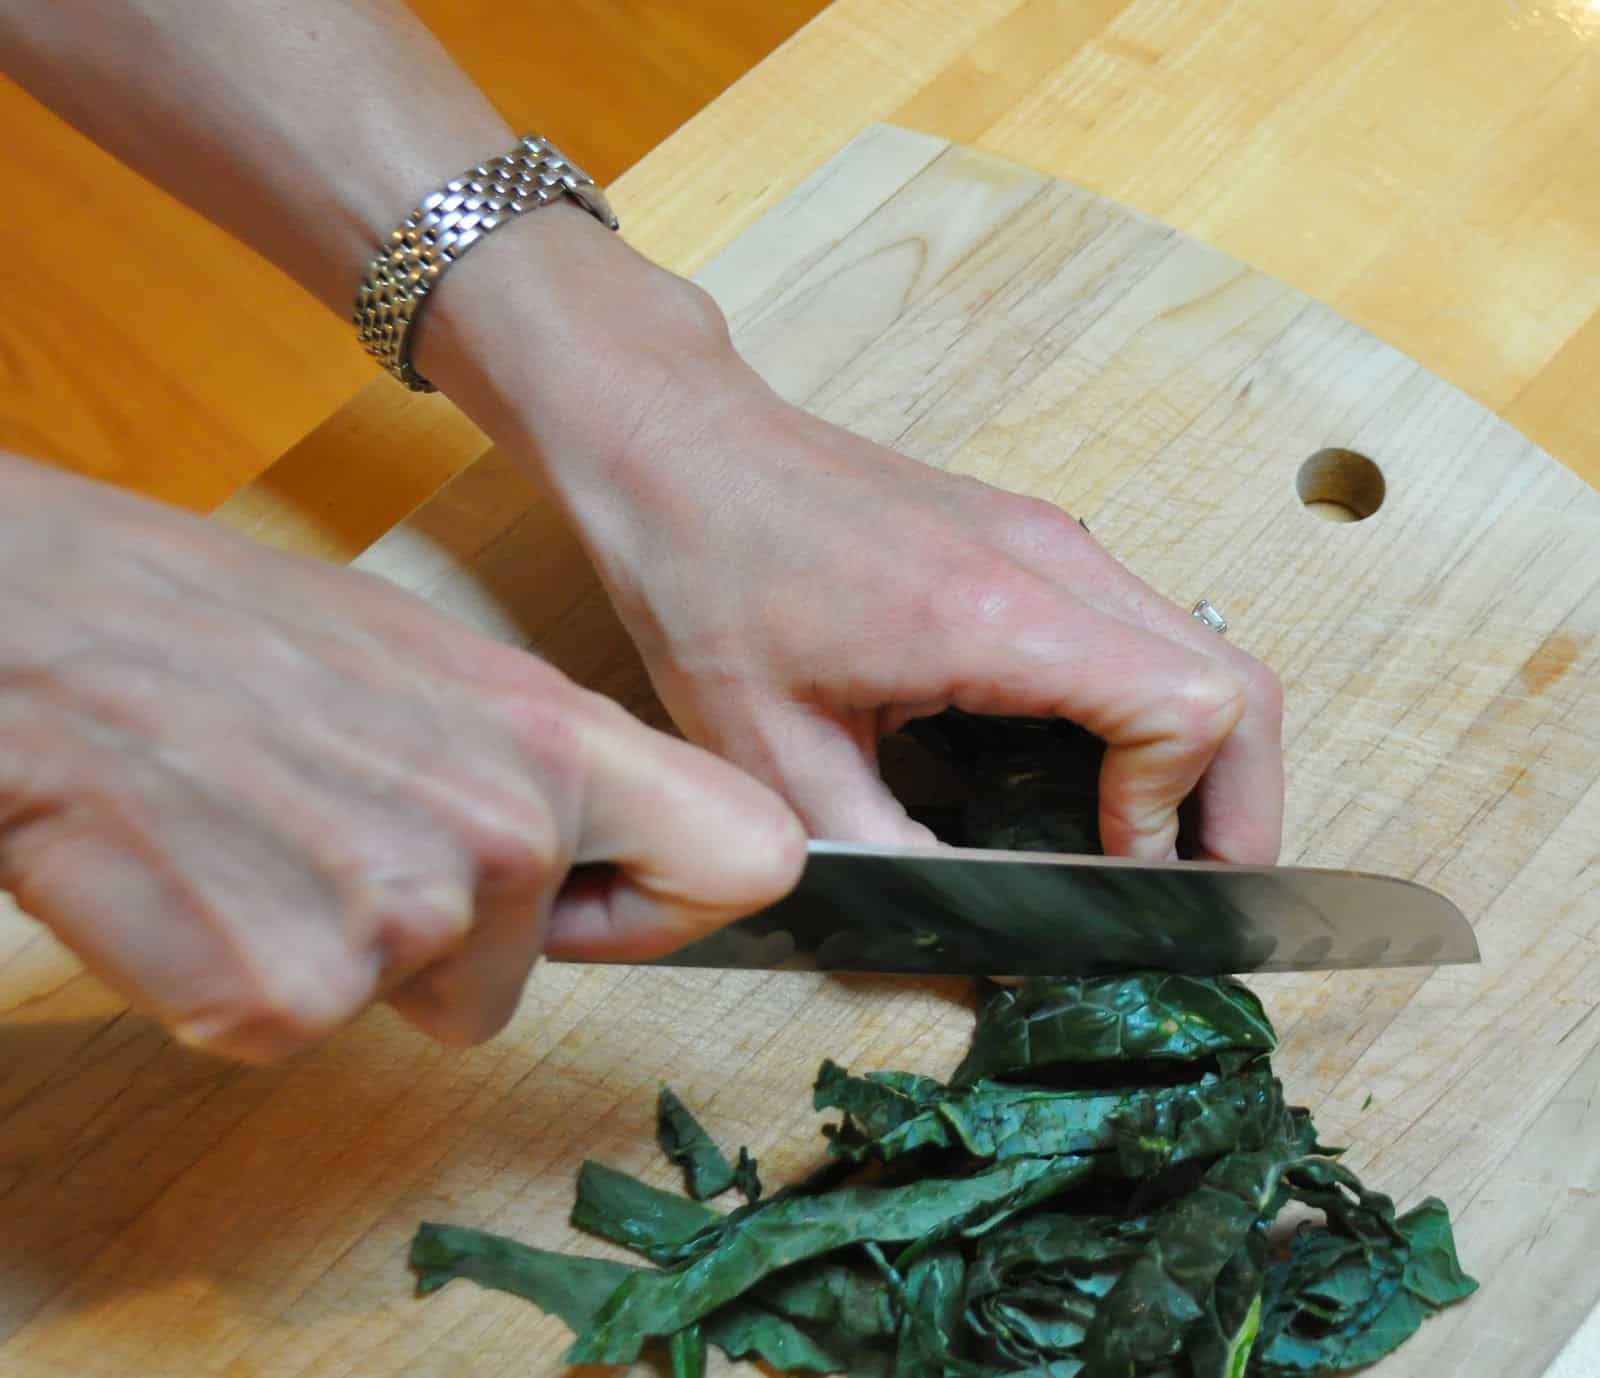 Cutting kale